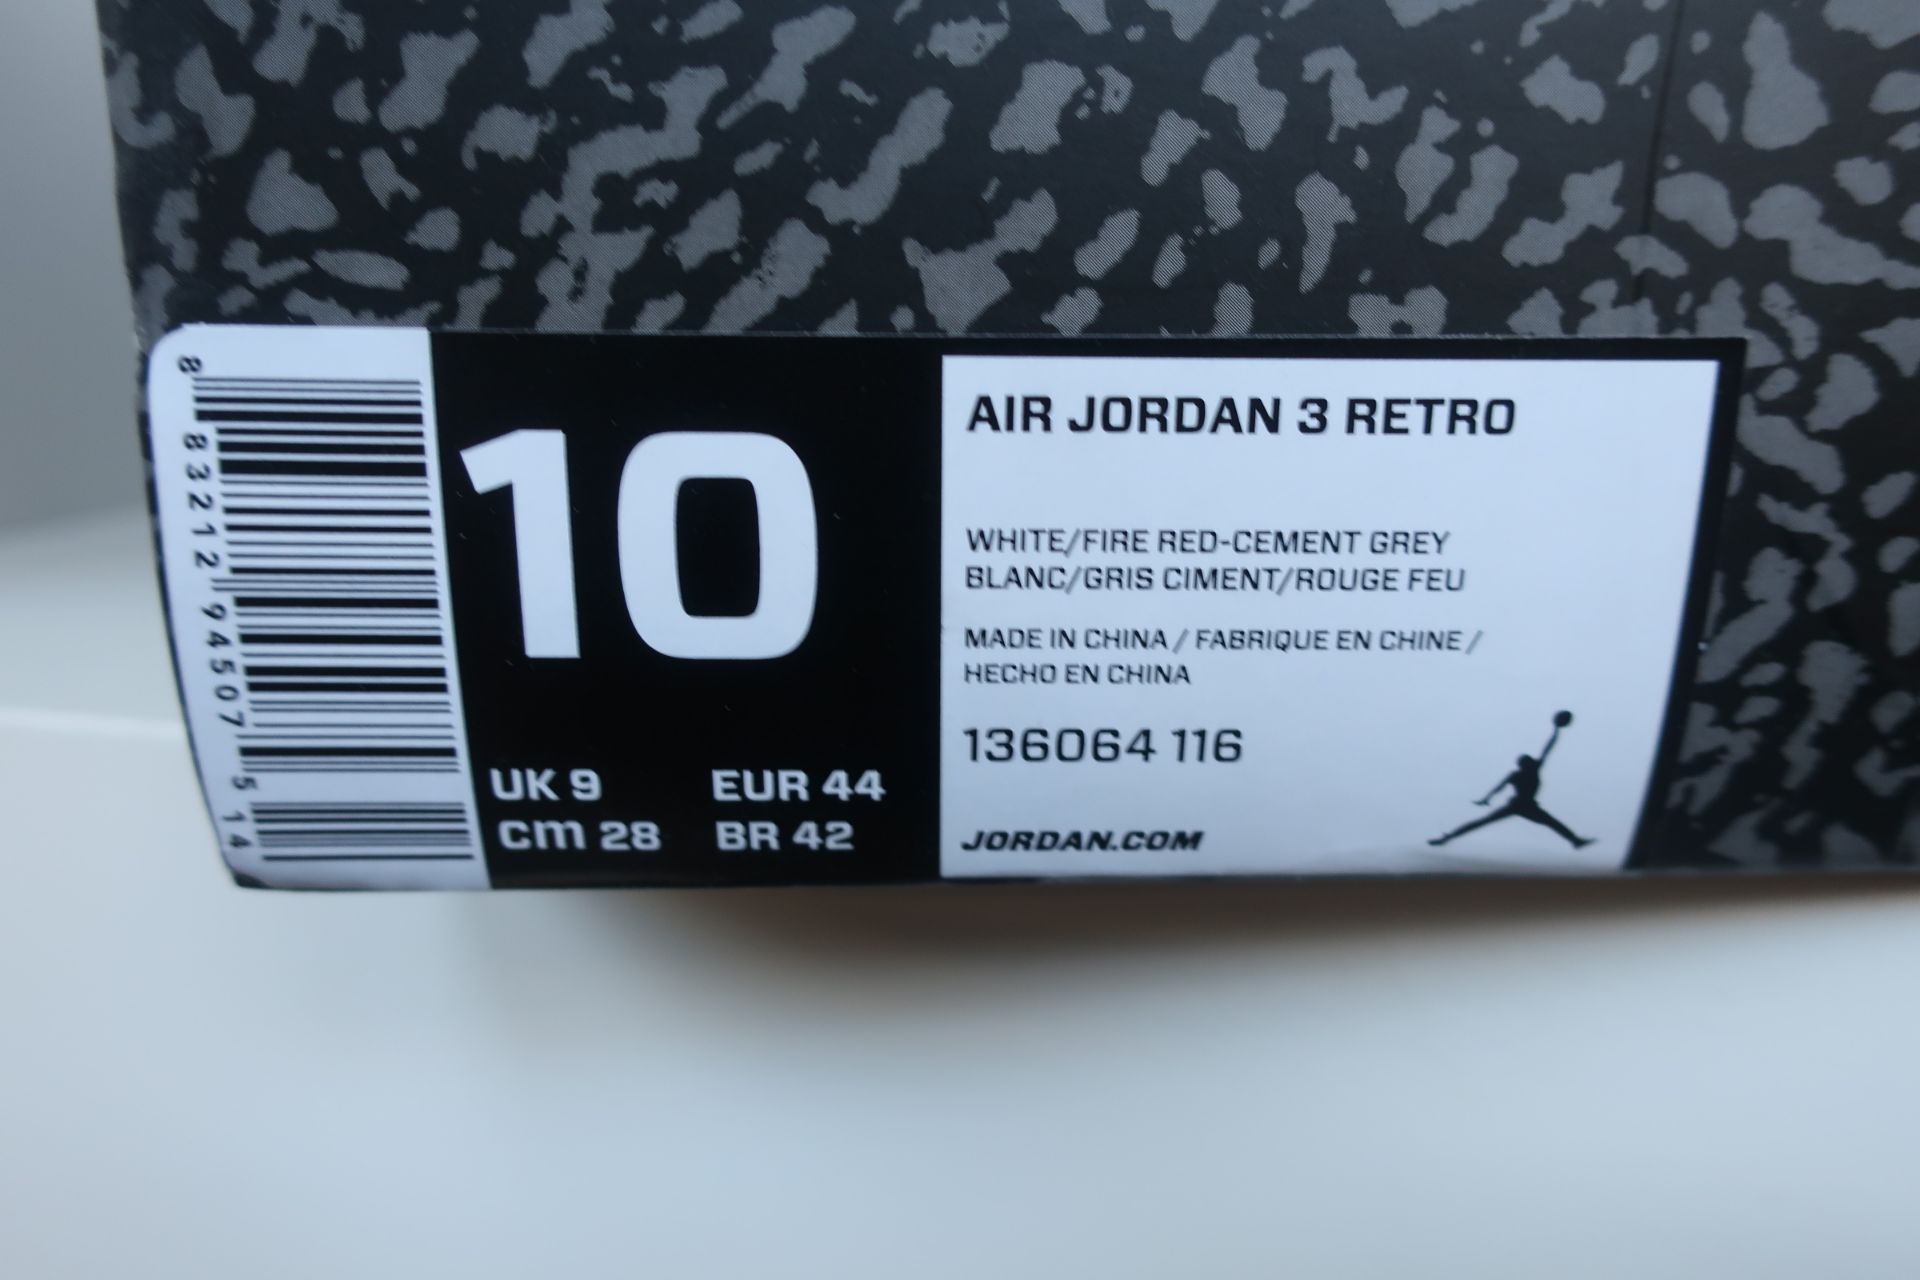 A pair of as new Nike Air Jordan 3 Retro (UK 9). - Image 6 of 6